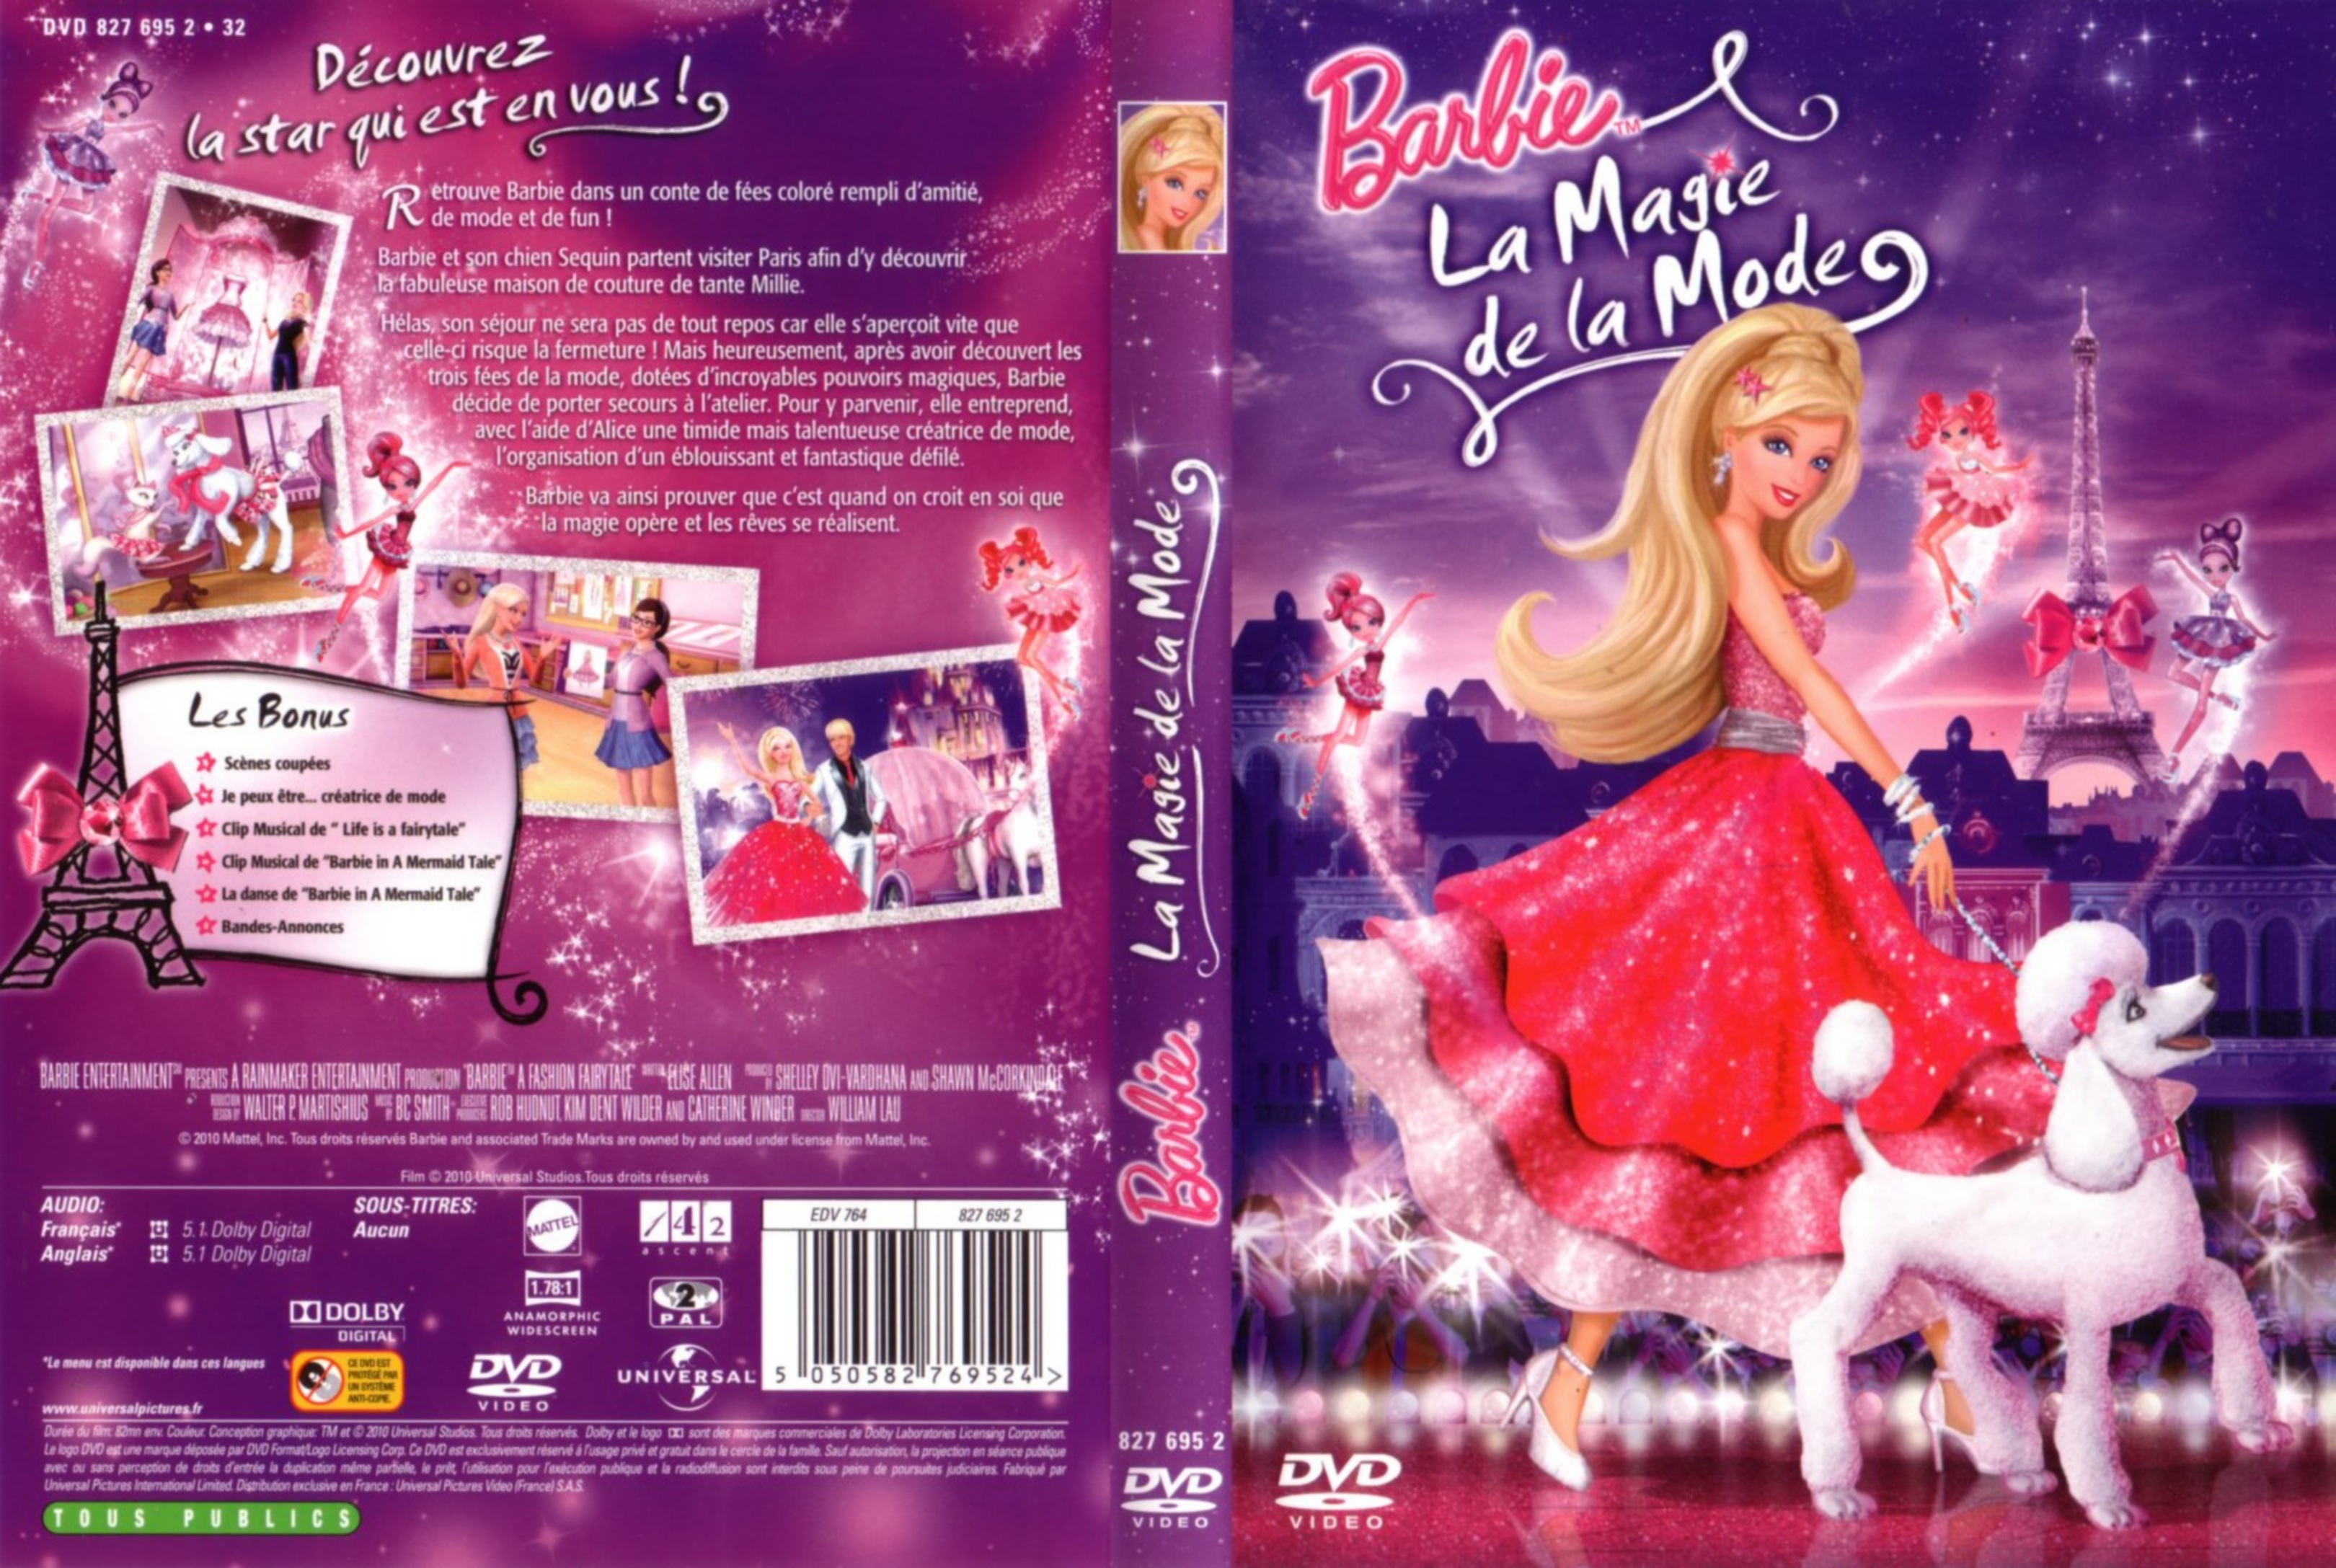 Jaquette DVD Barbie la magie de la mode